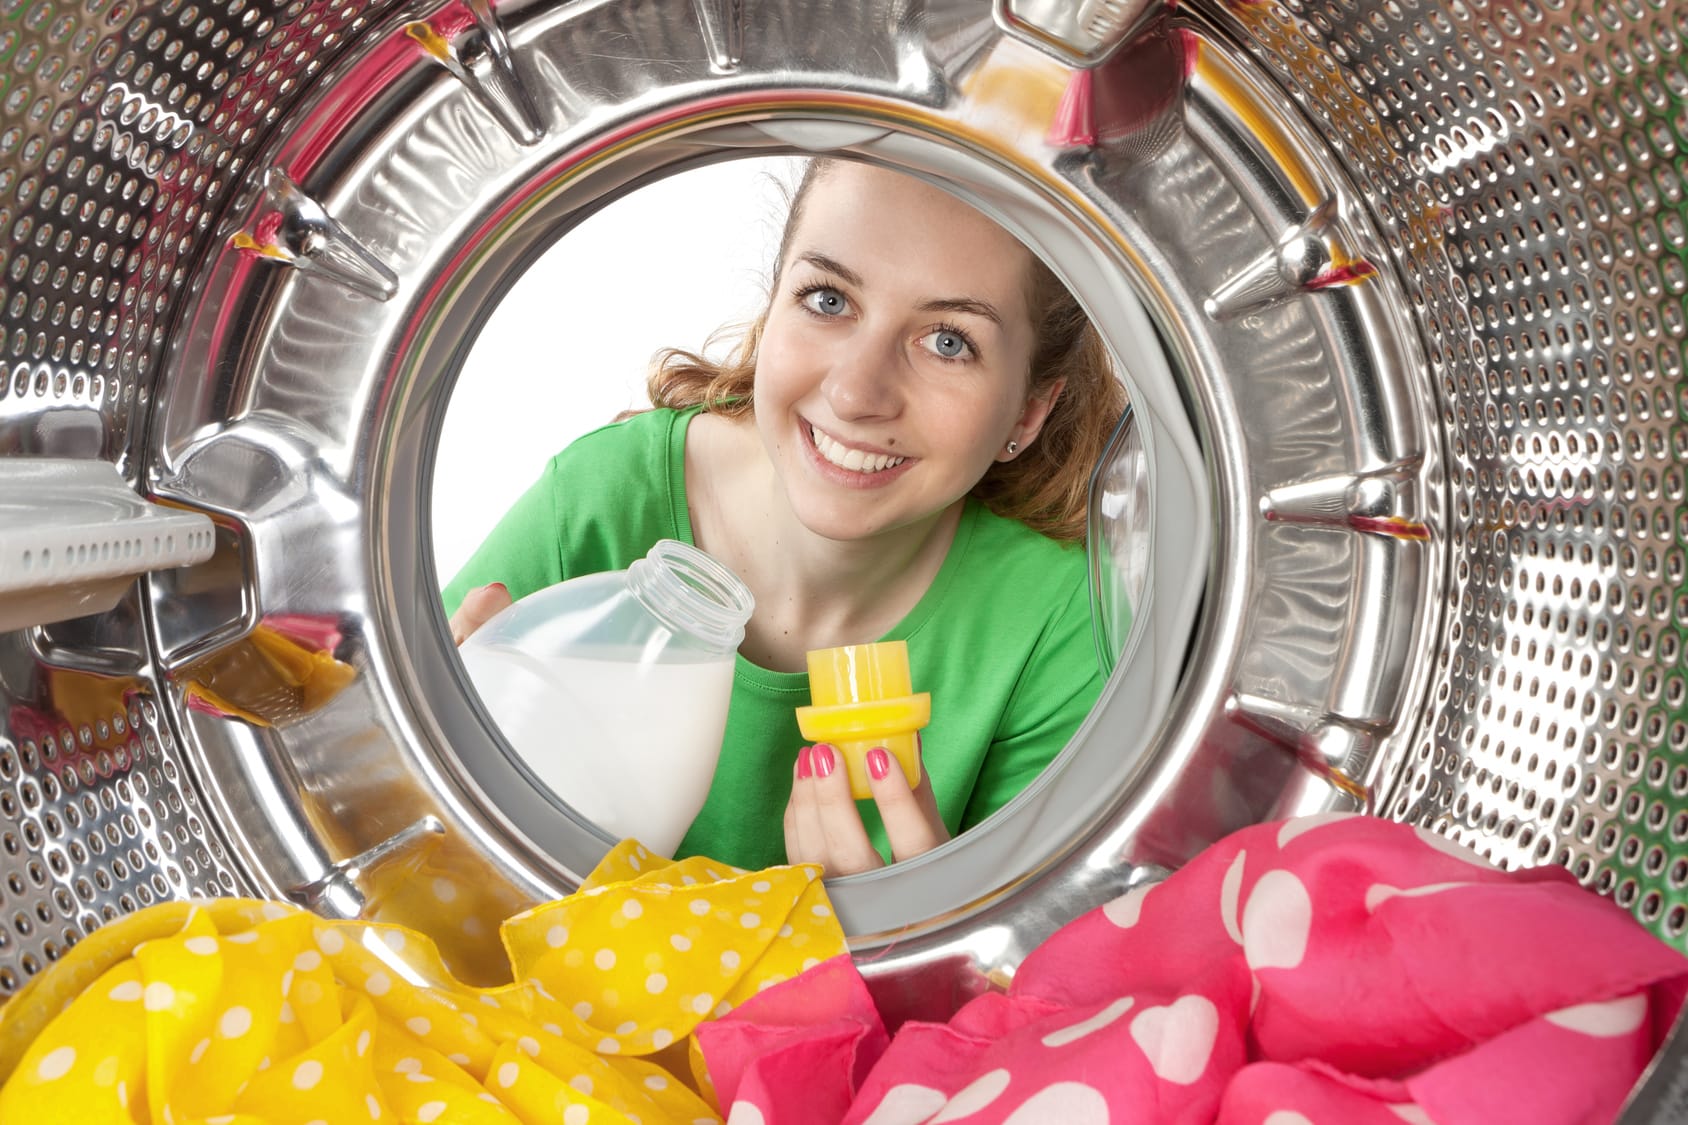 Colorwaschmittel – Enthalten sie einen wäscheschonenden Zusatz?